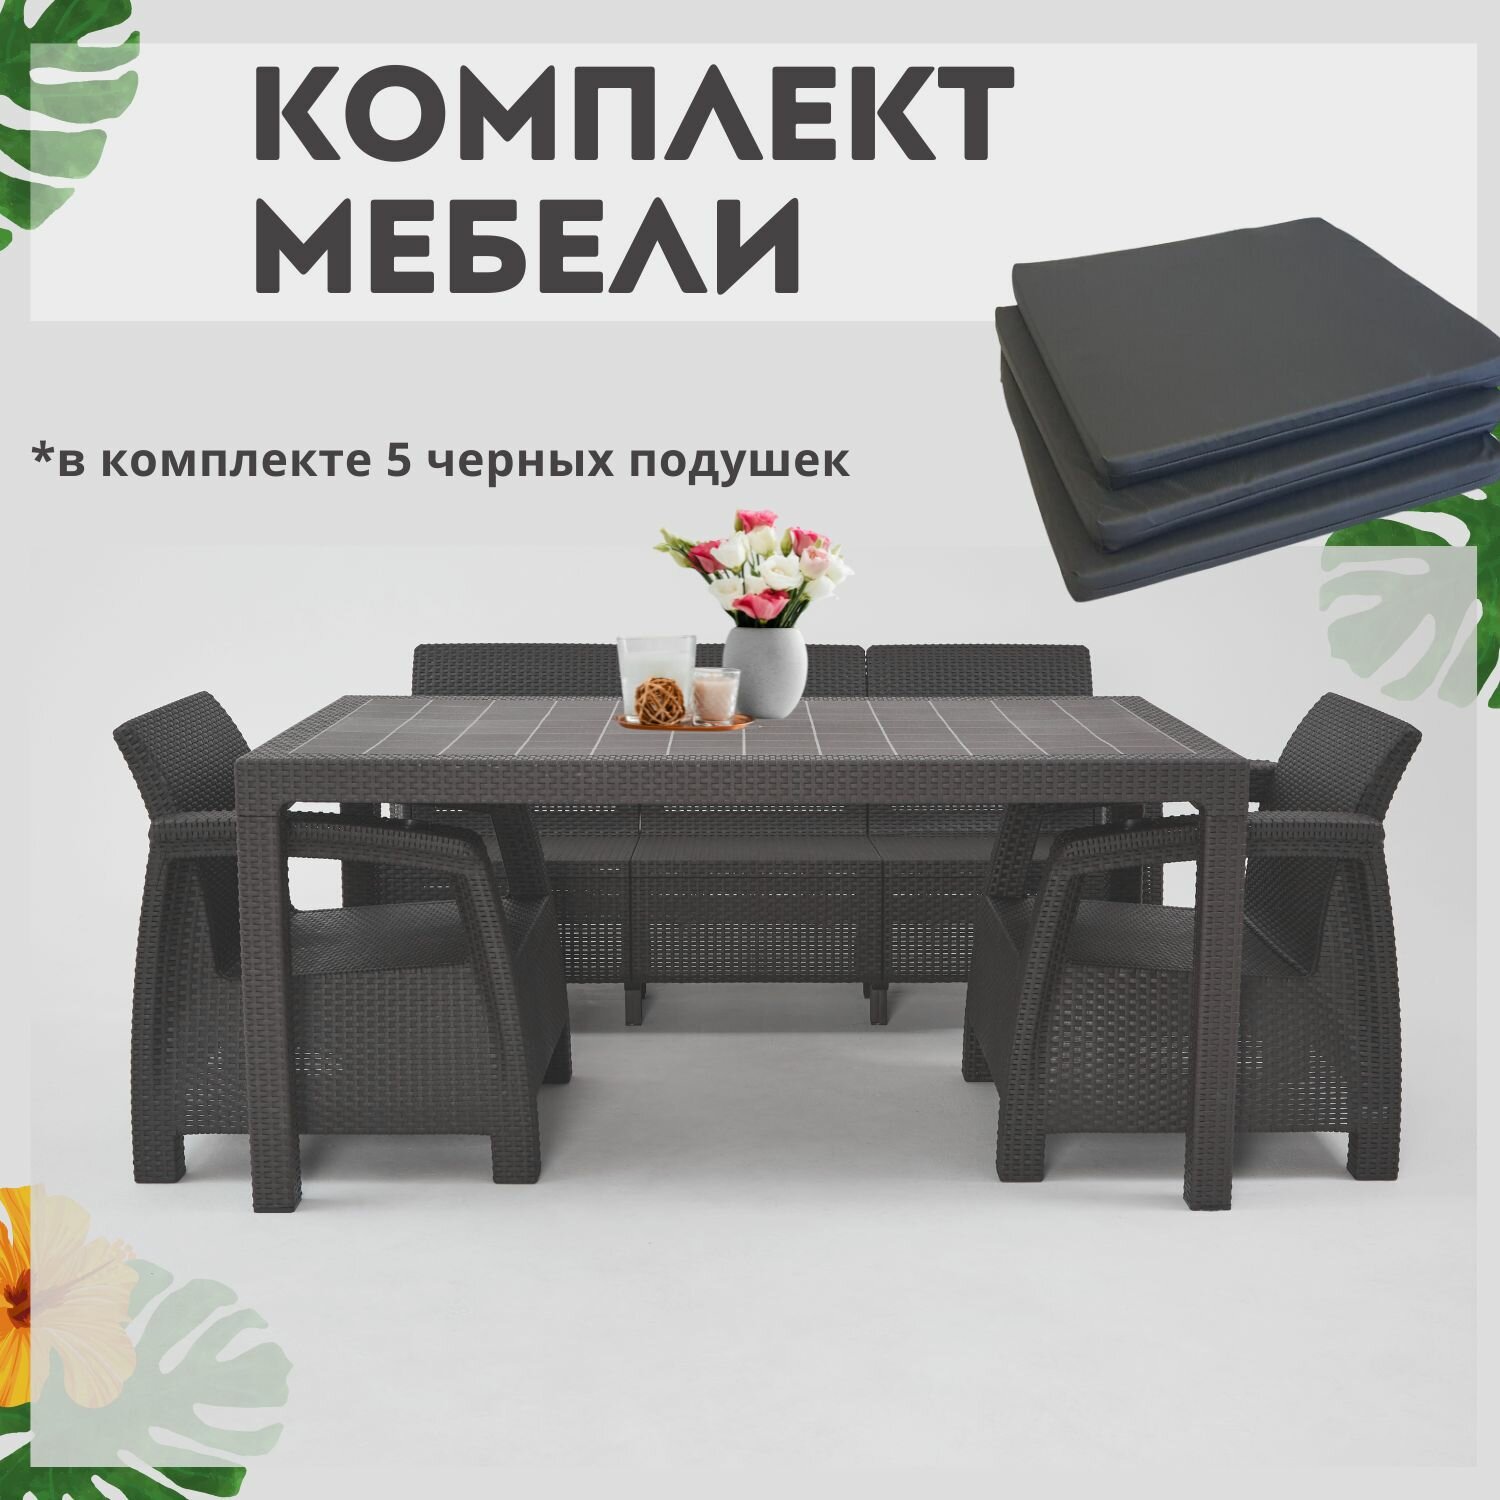 Комплект садовой мебели из ротанга Set 3+1+1+обеденный стол 160х95 с комплектом черных подушек